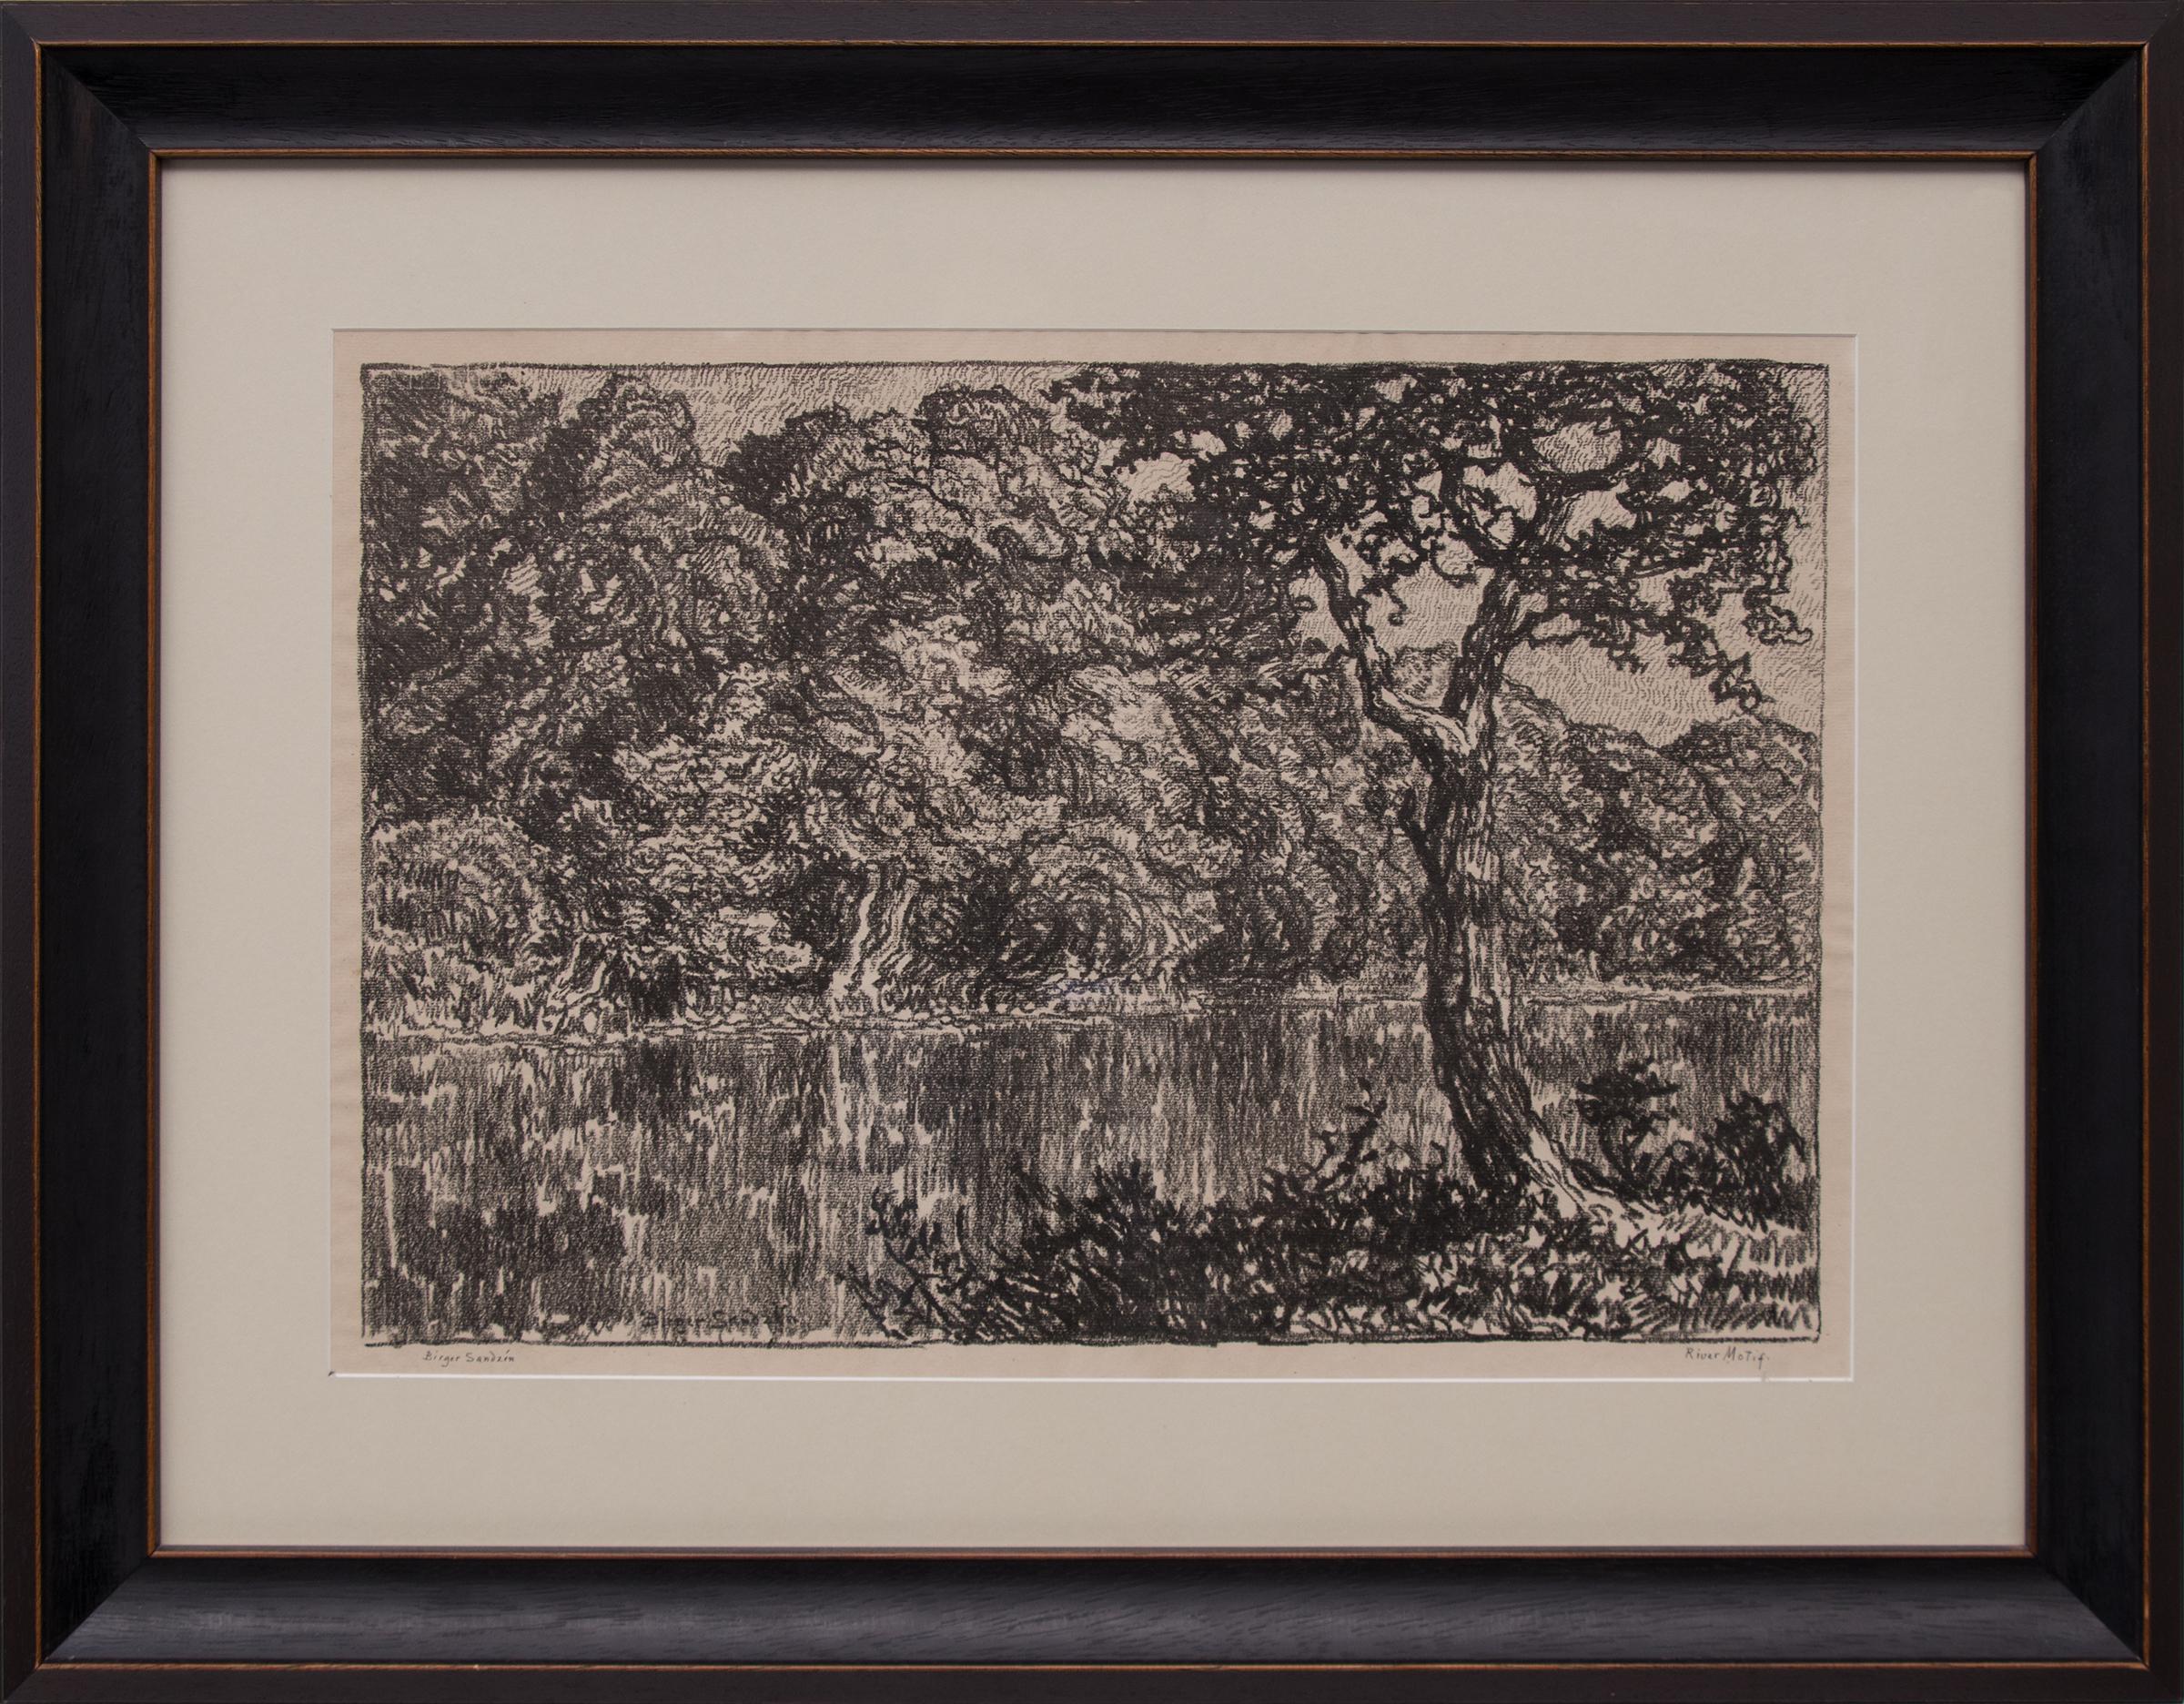 Birger Sandzen Landscape Print - River Motif, 1918 Original Black and White Lithograph Kansas Landscape Trees